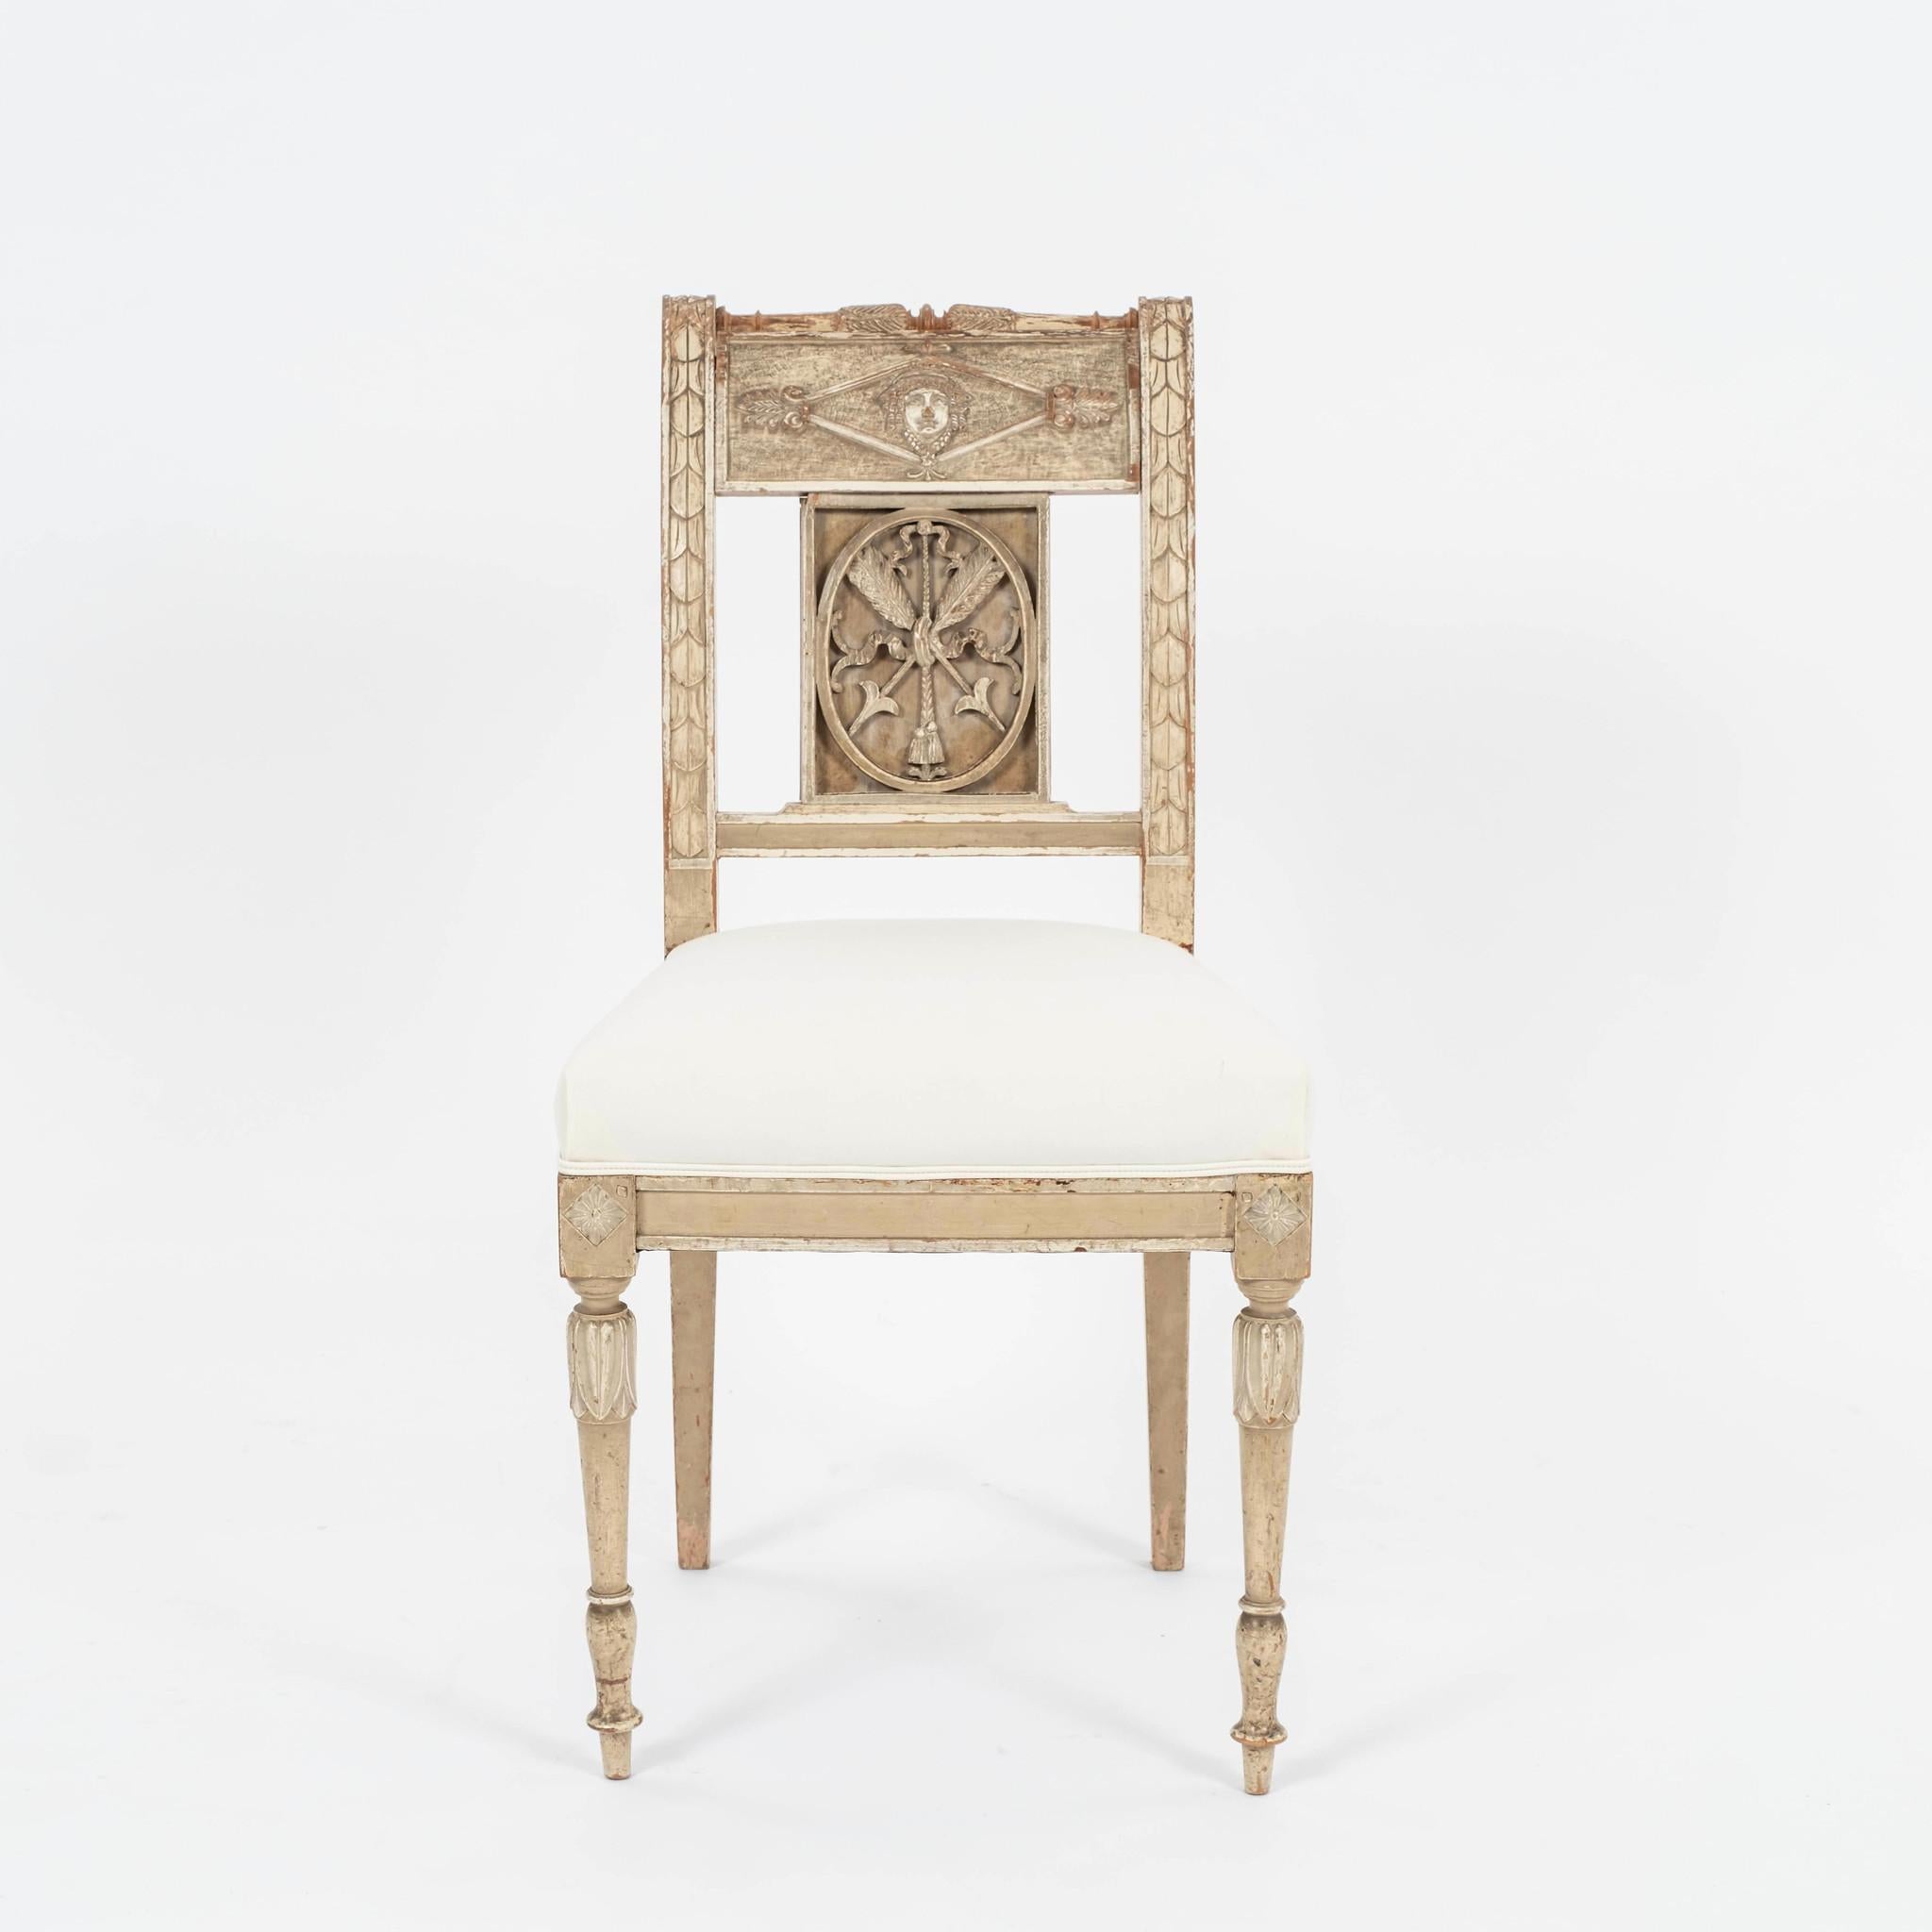 Paar gustavianische Stühle aus dem 18. Jahrhundert: wunderschön geschnitzt, gekratzt und mit außergewöhnlichen klassizistischen Motiven verziert. Neu gepolstert mit Inlett.
Vier Stück verfügbar und paarweise verkauft in diesem Angebot.